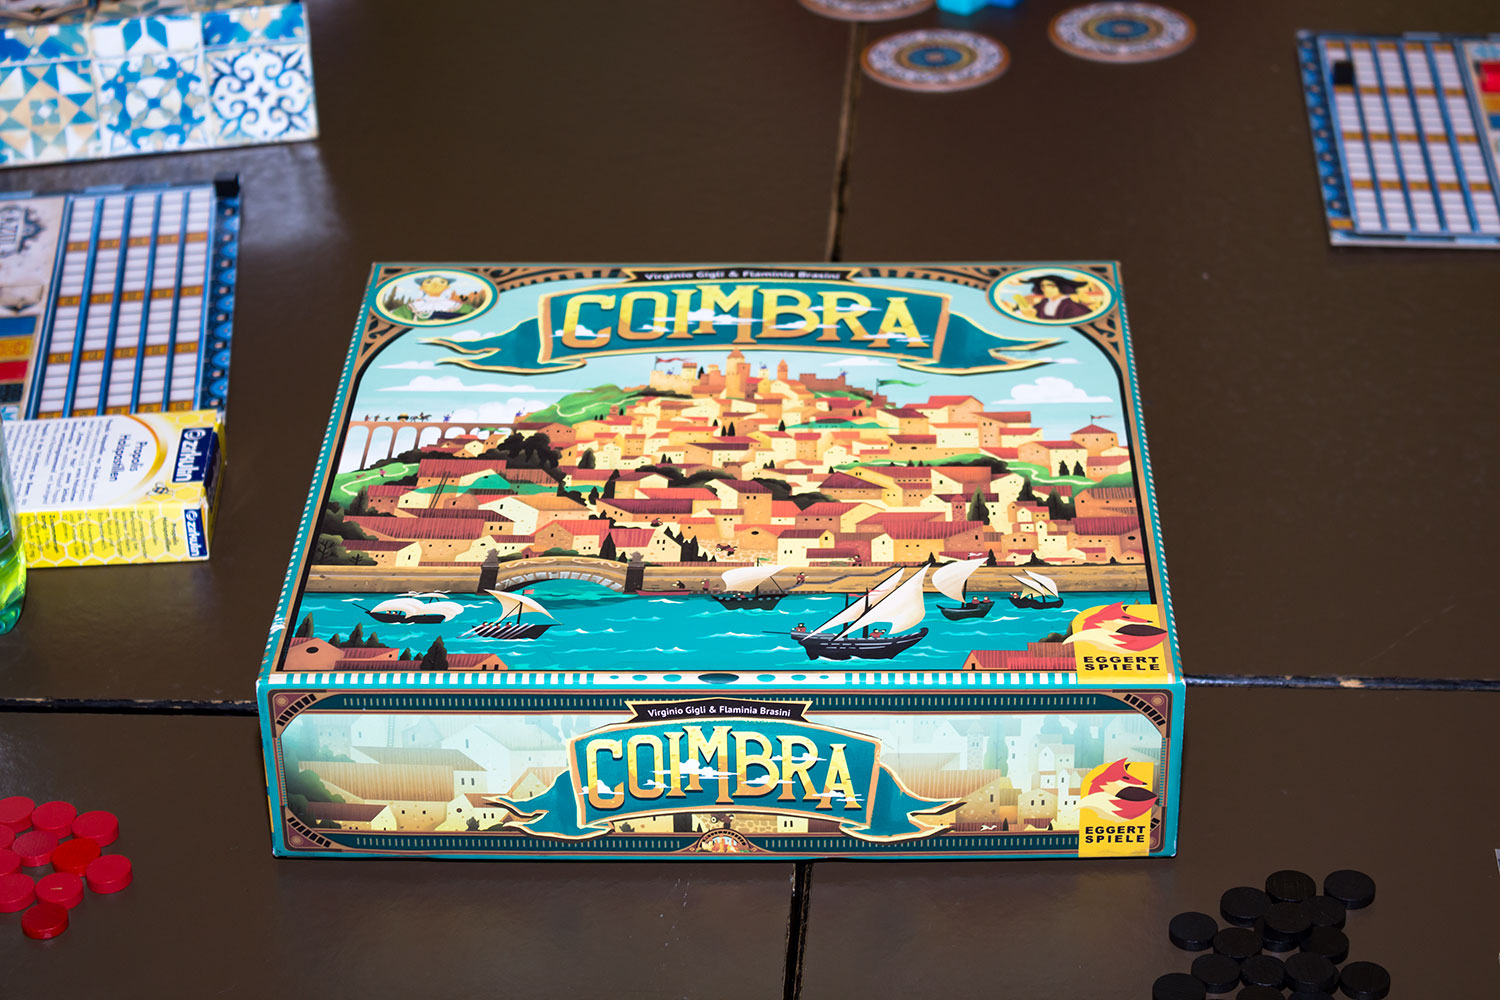 Coimbra von eggertspiele für 2018 angekündigtErste Bilder vom Spiel: Coimbra von eggertspiele 